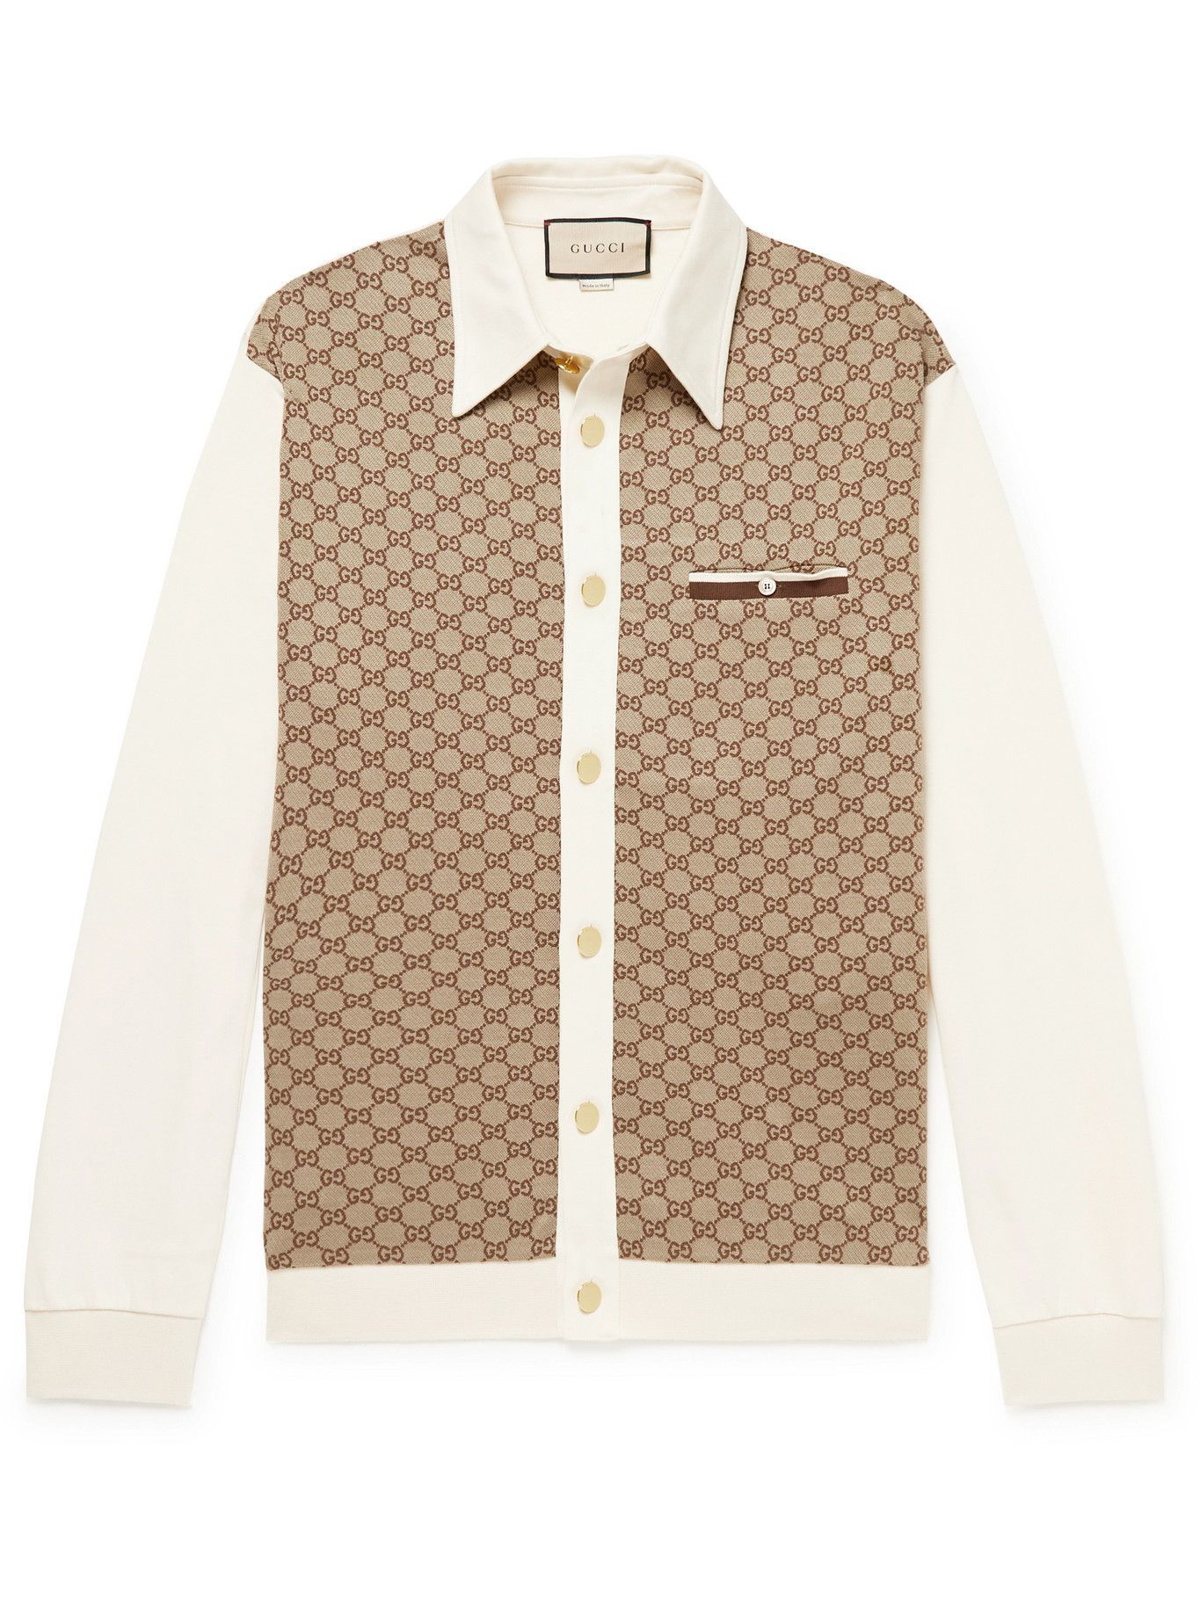 GG Jacquard Linen Blend Shirt in Beige - Gucci